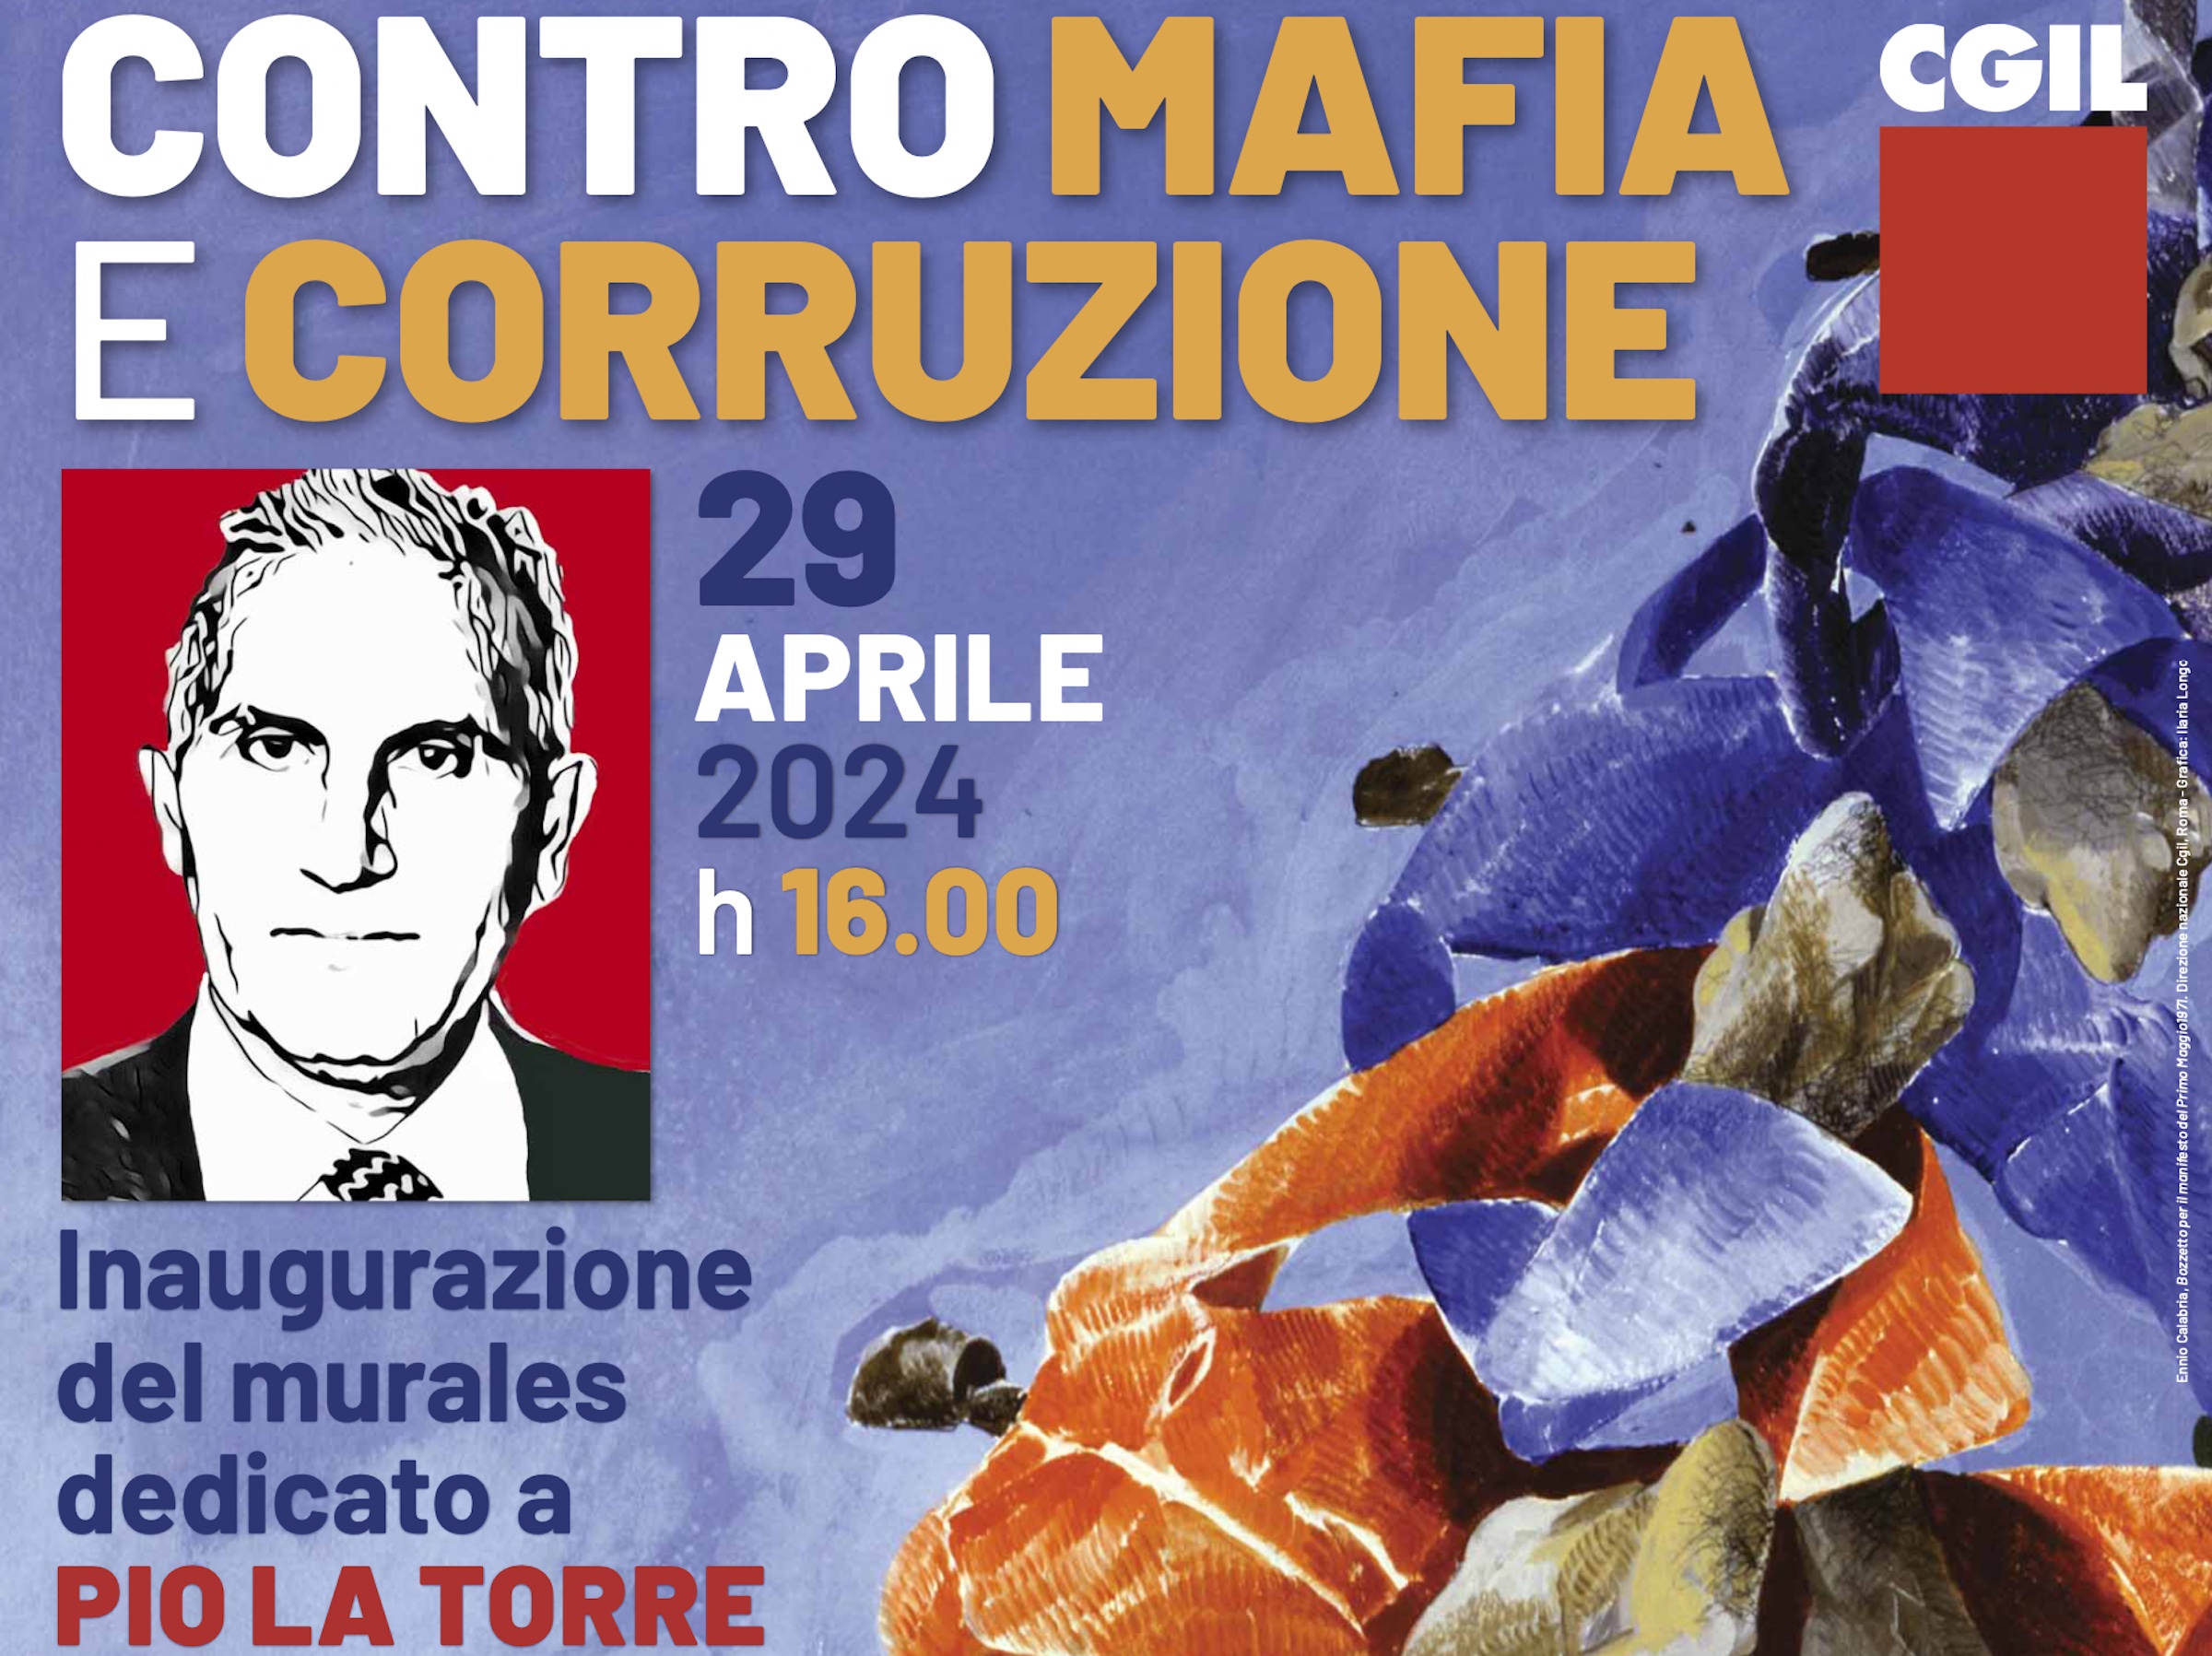 Il 29 aprile Avviso Pubblico a Palermo all'Assemblea nazionale contro mafia e corruzione della CGIL